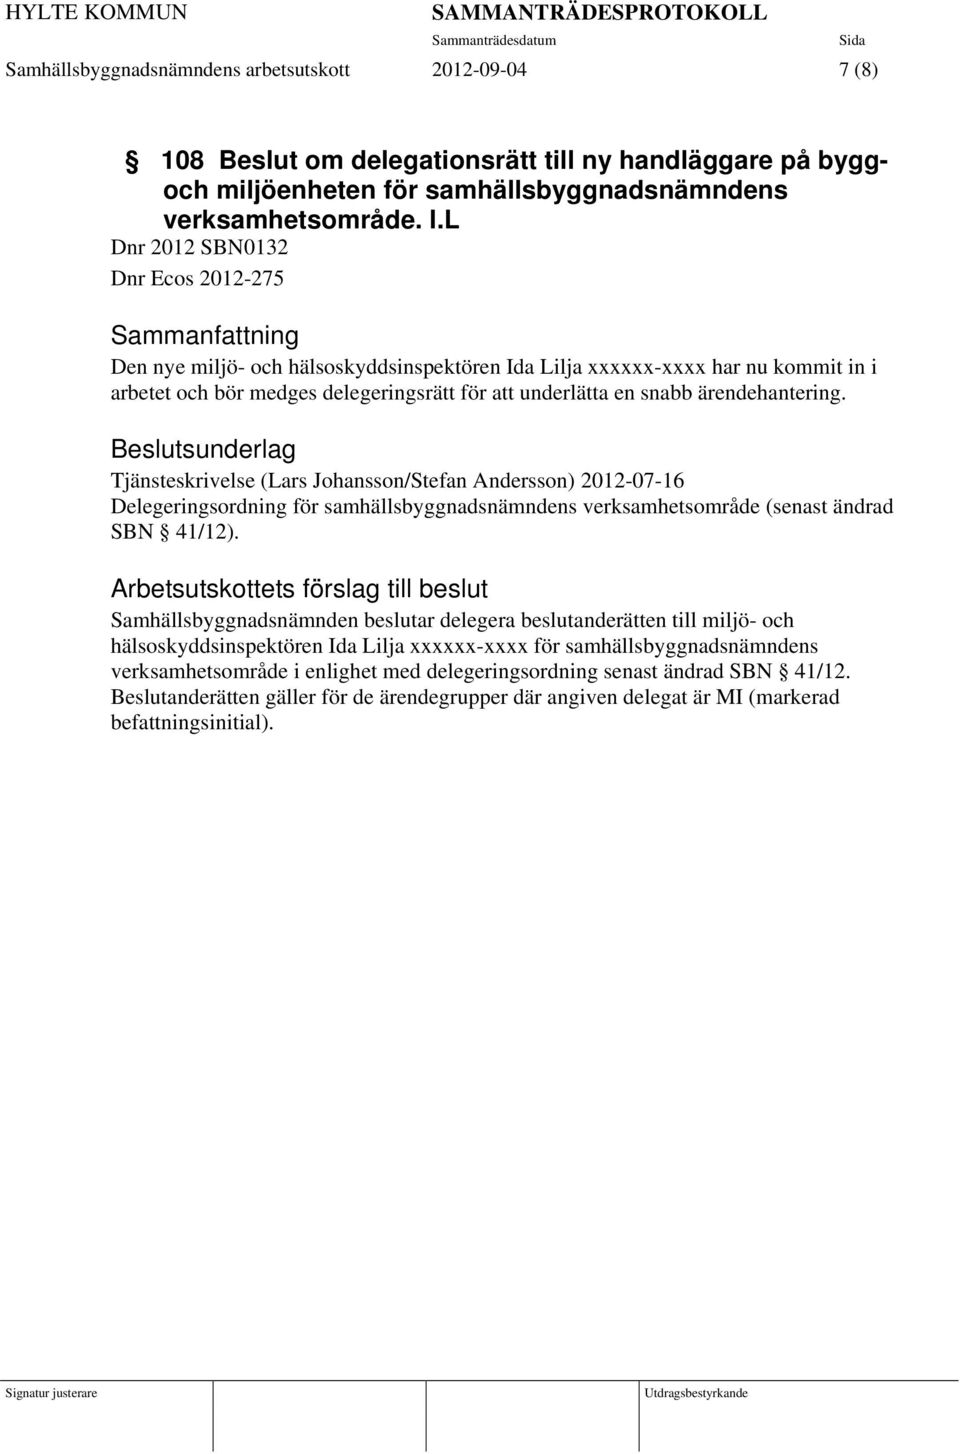 ärendehantering. Tjänsteskrivelse (Lars Johansson/Stefan Andersson) 2012-07-16 Delegeringsordning för samhällsbyggnadsnämndens verksamhetsområde (senast ändrad SBN 41/12).